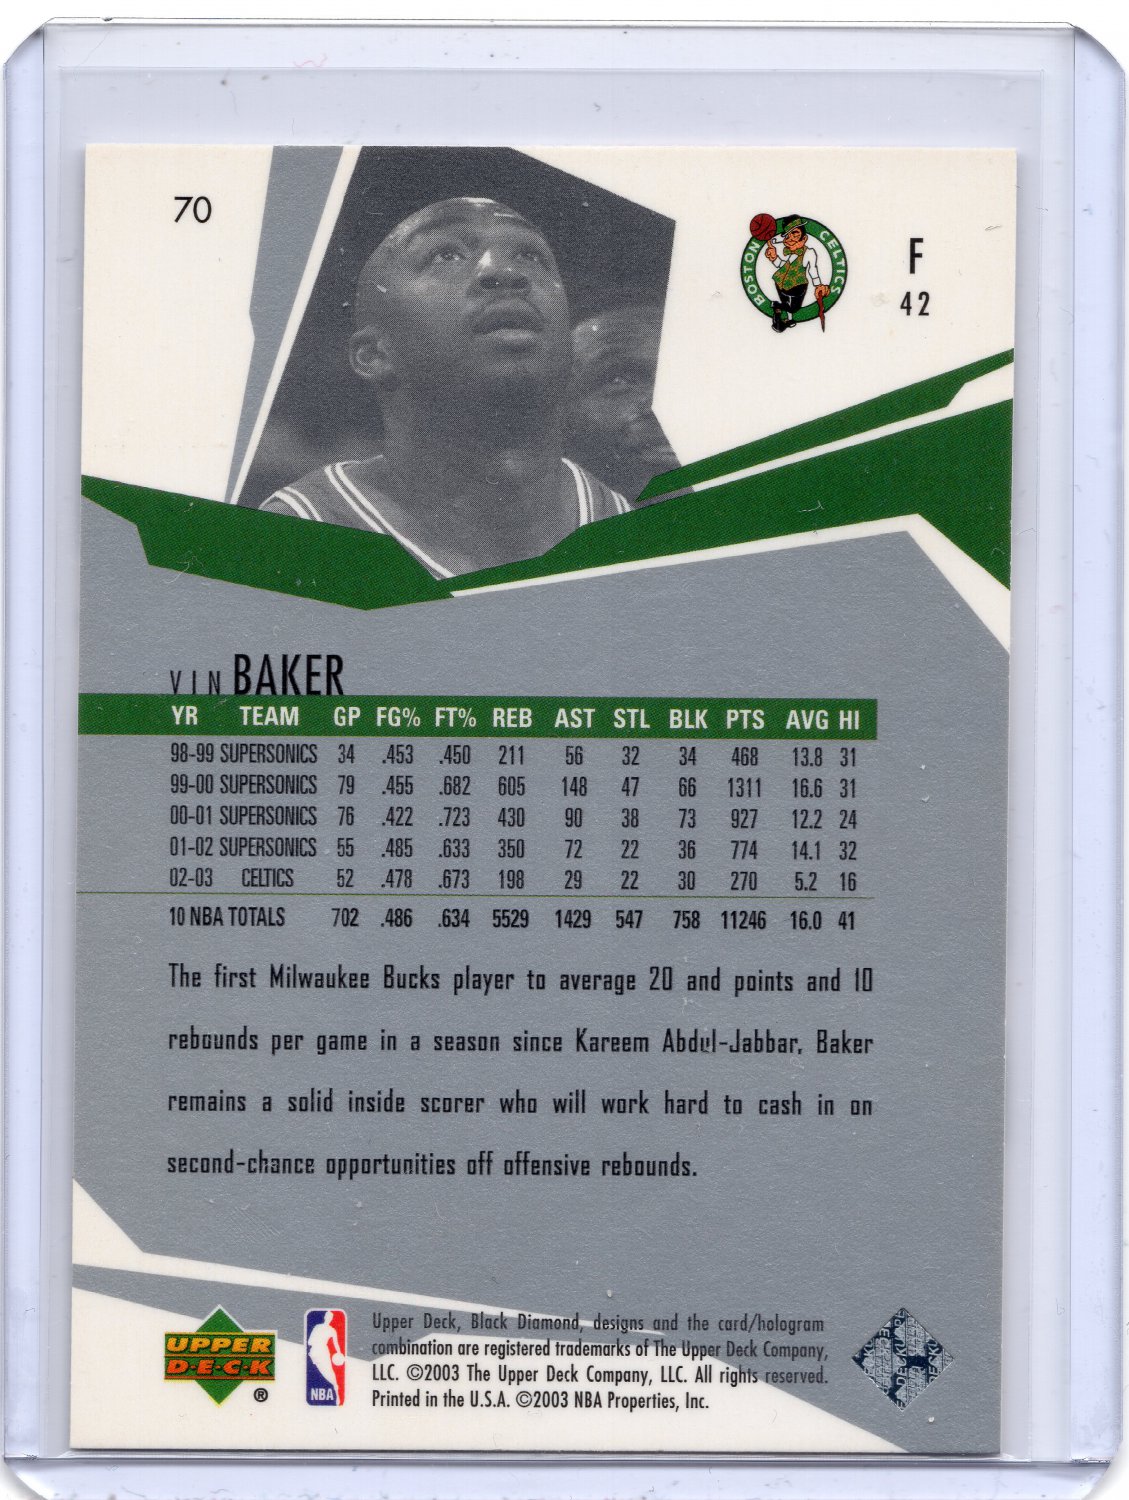 Vin Baker 2003-04 Upper Deck Black Diamond card #70 Boston Celtics